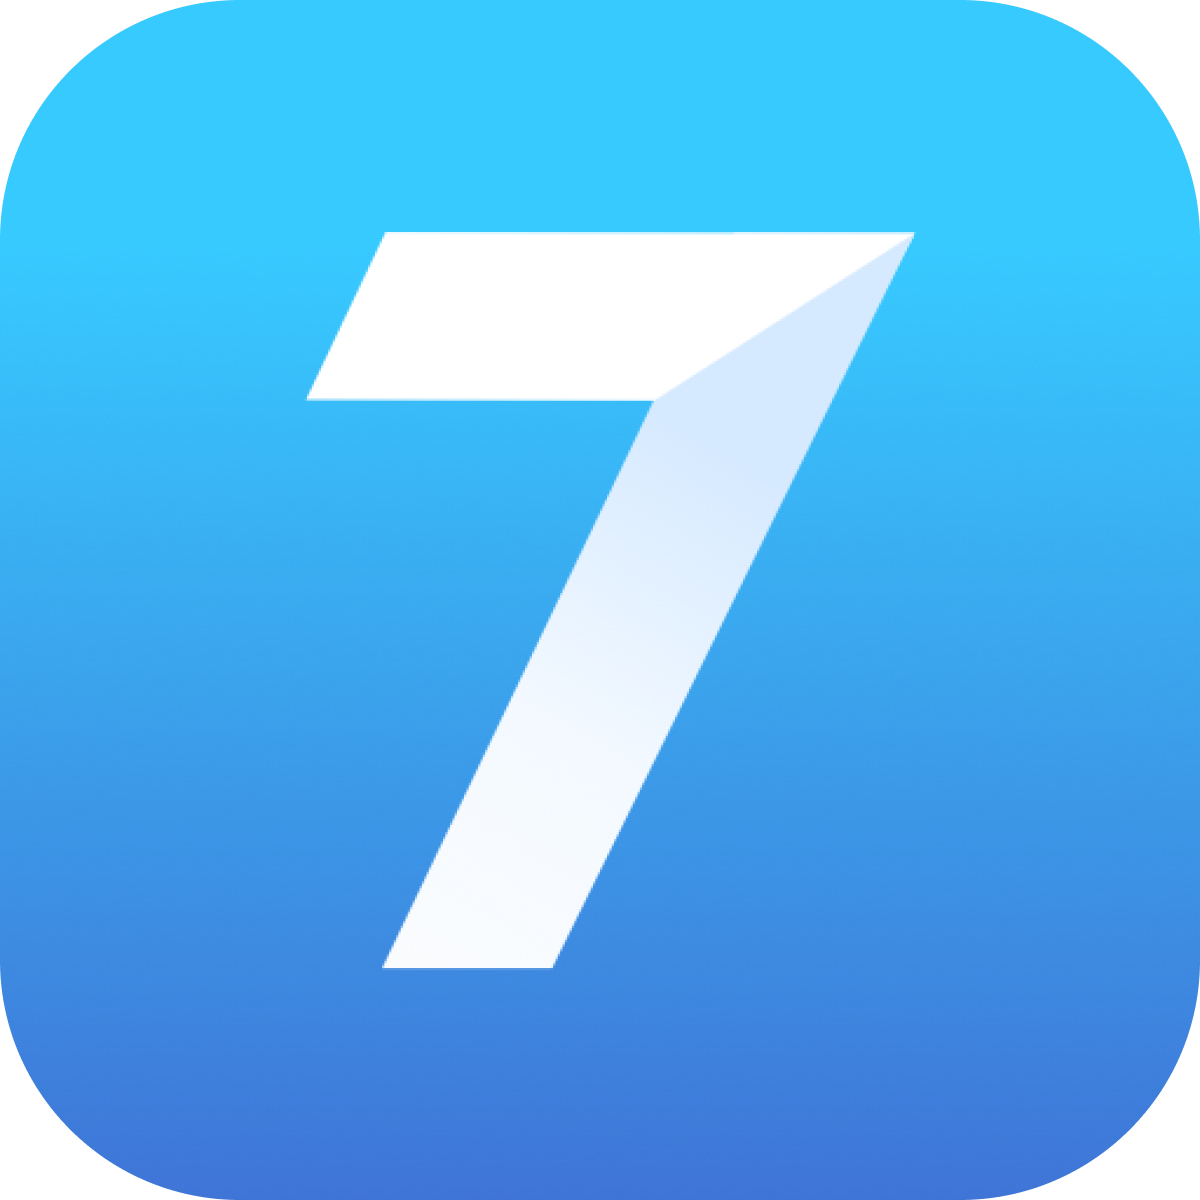 Логотип Seven